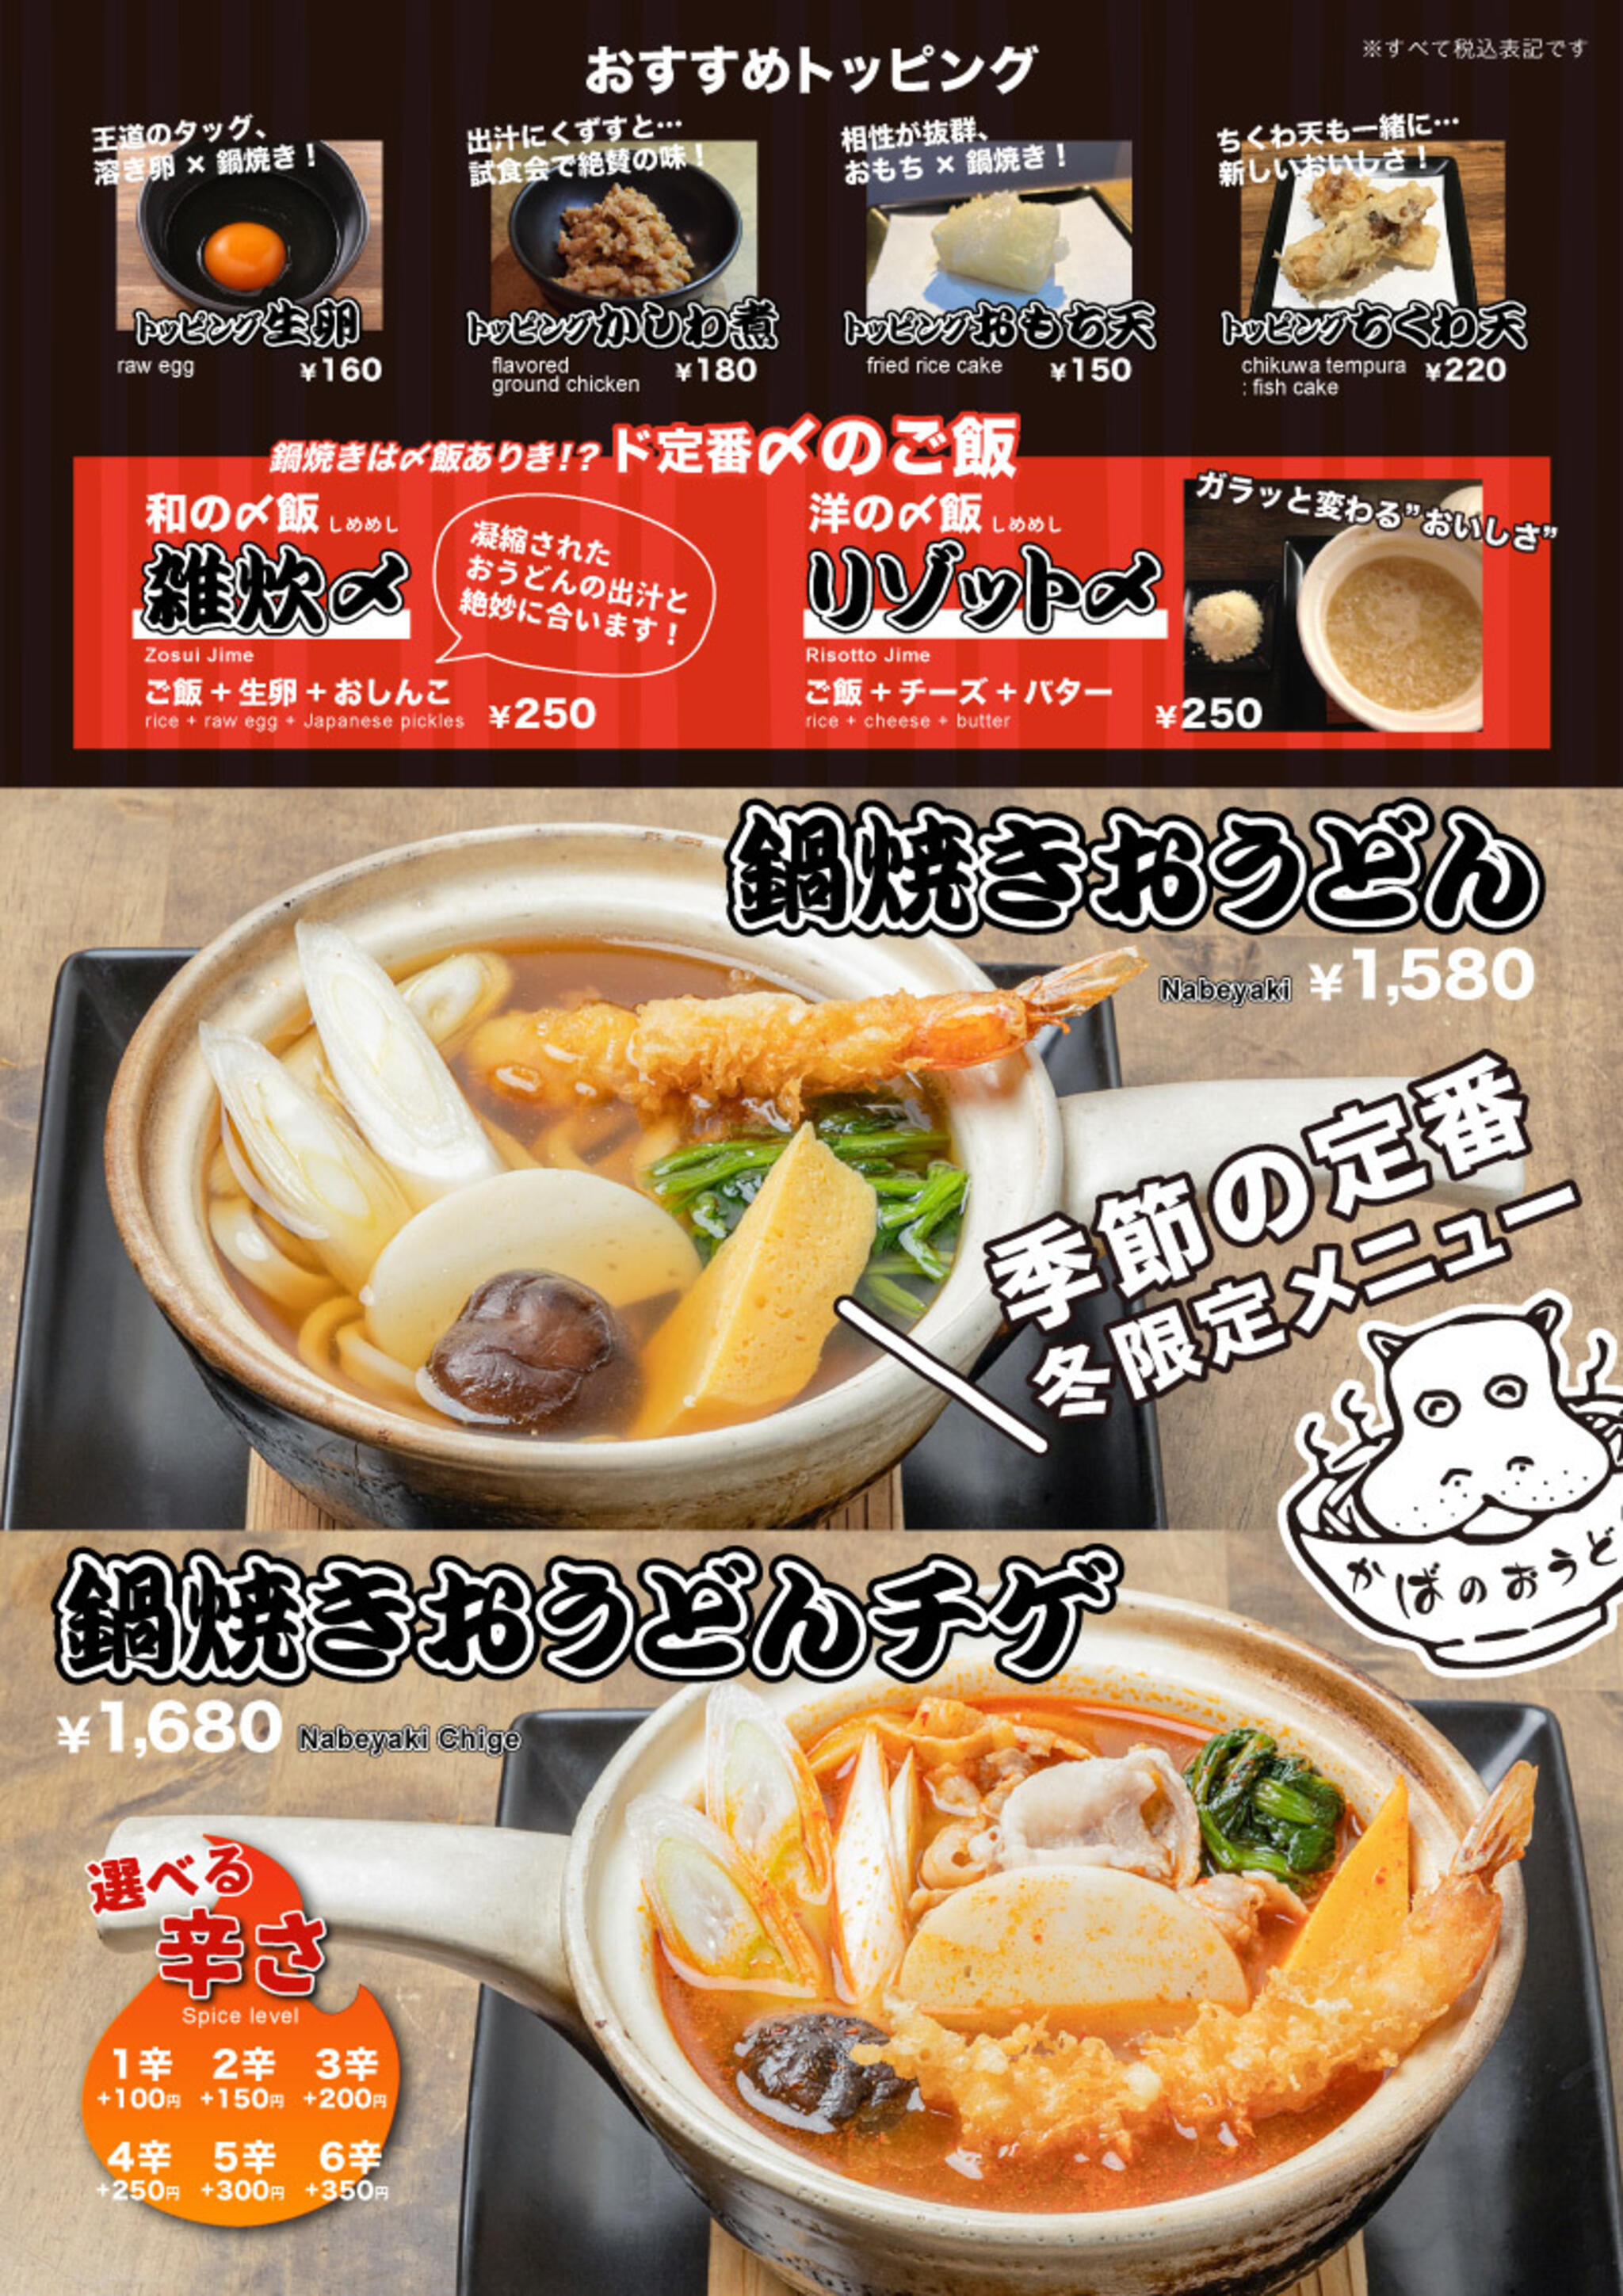 かばのおうどん 横浜元町本店からのお知らせ(冬の定番「鍋焼きおうどん」がスタートします！)に関する写真